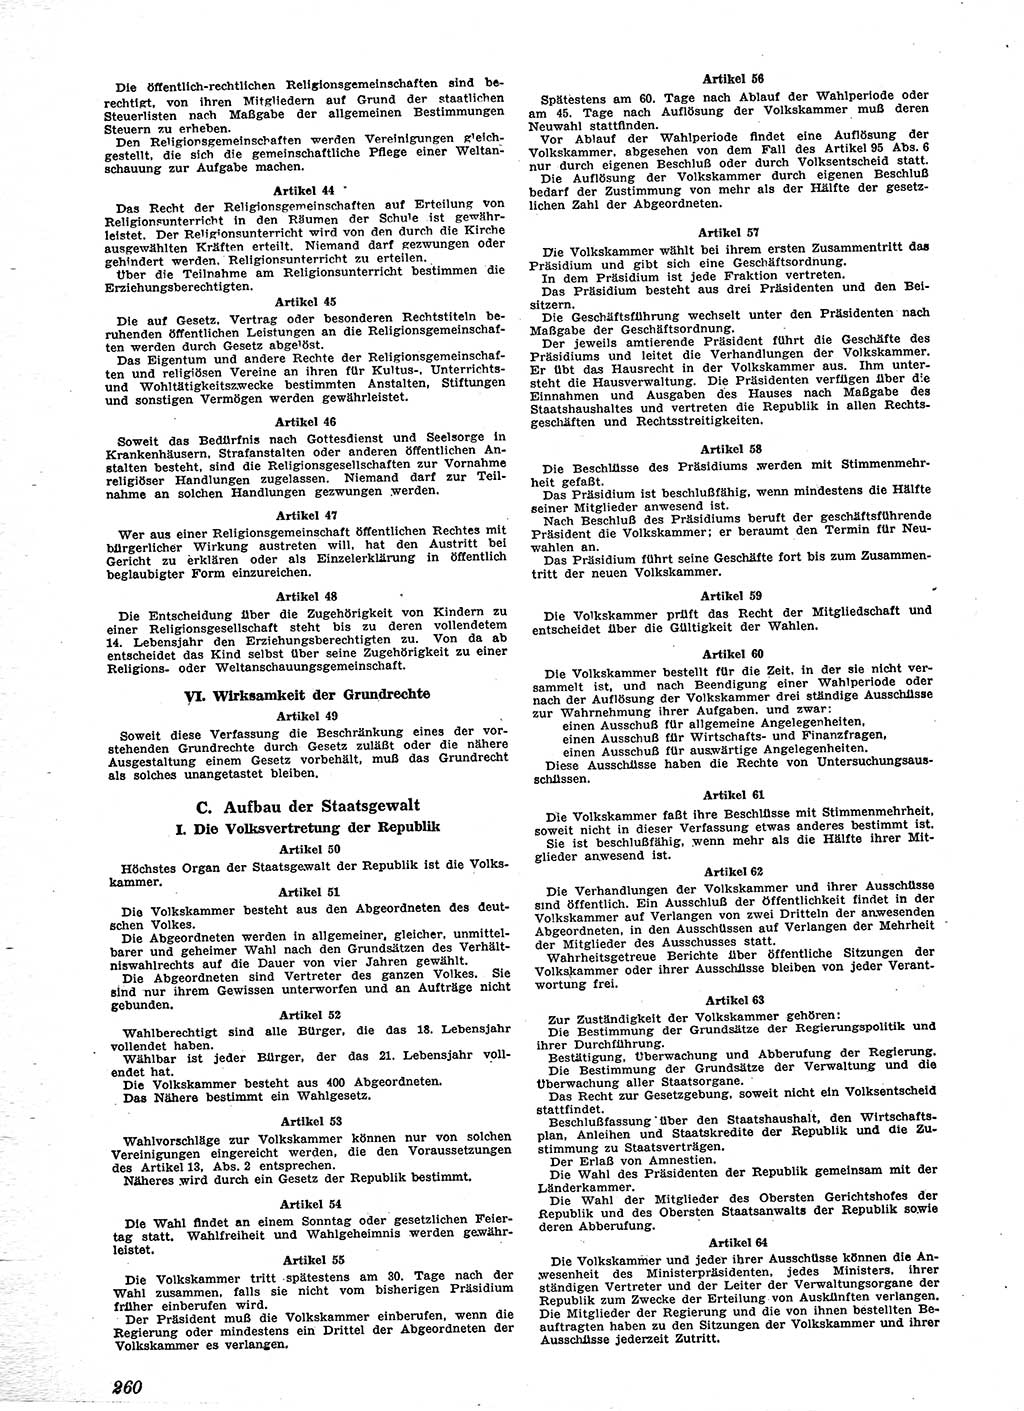 Neue Justiz (NJ), Zeitschrift für Recht und Rechtswissenschaft [Sowjetische Besatzungszone (SBZ) Deutschland], 2. Jahrgang 1948, Seite 260 (NJ SBZ Dtl. 1948, S. 260)